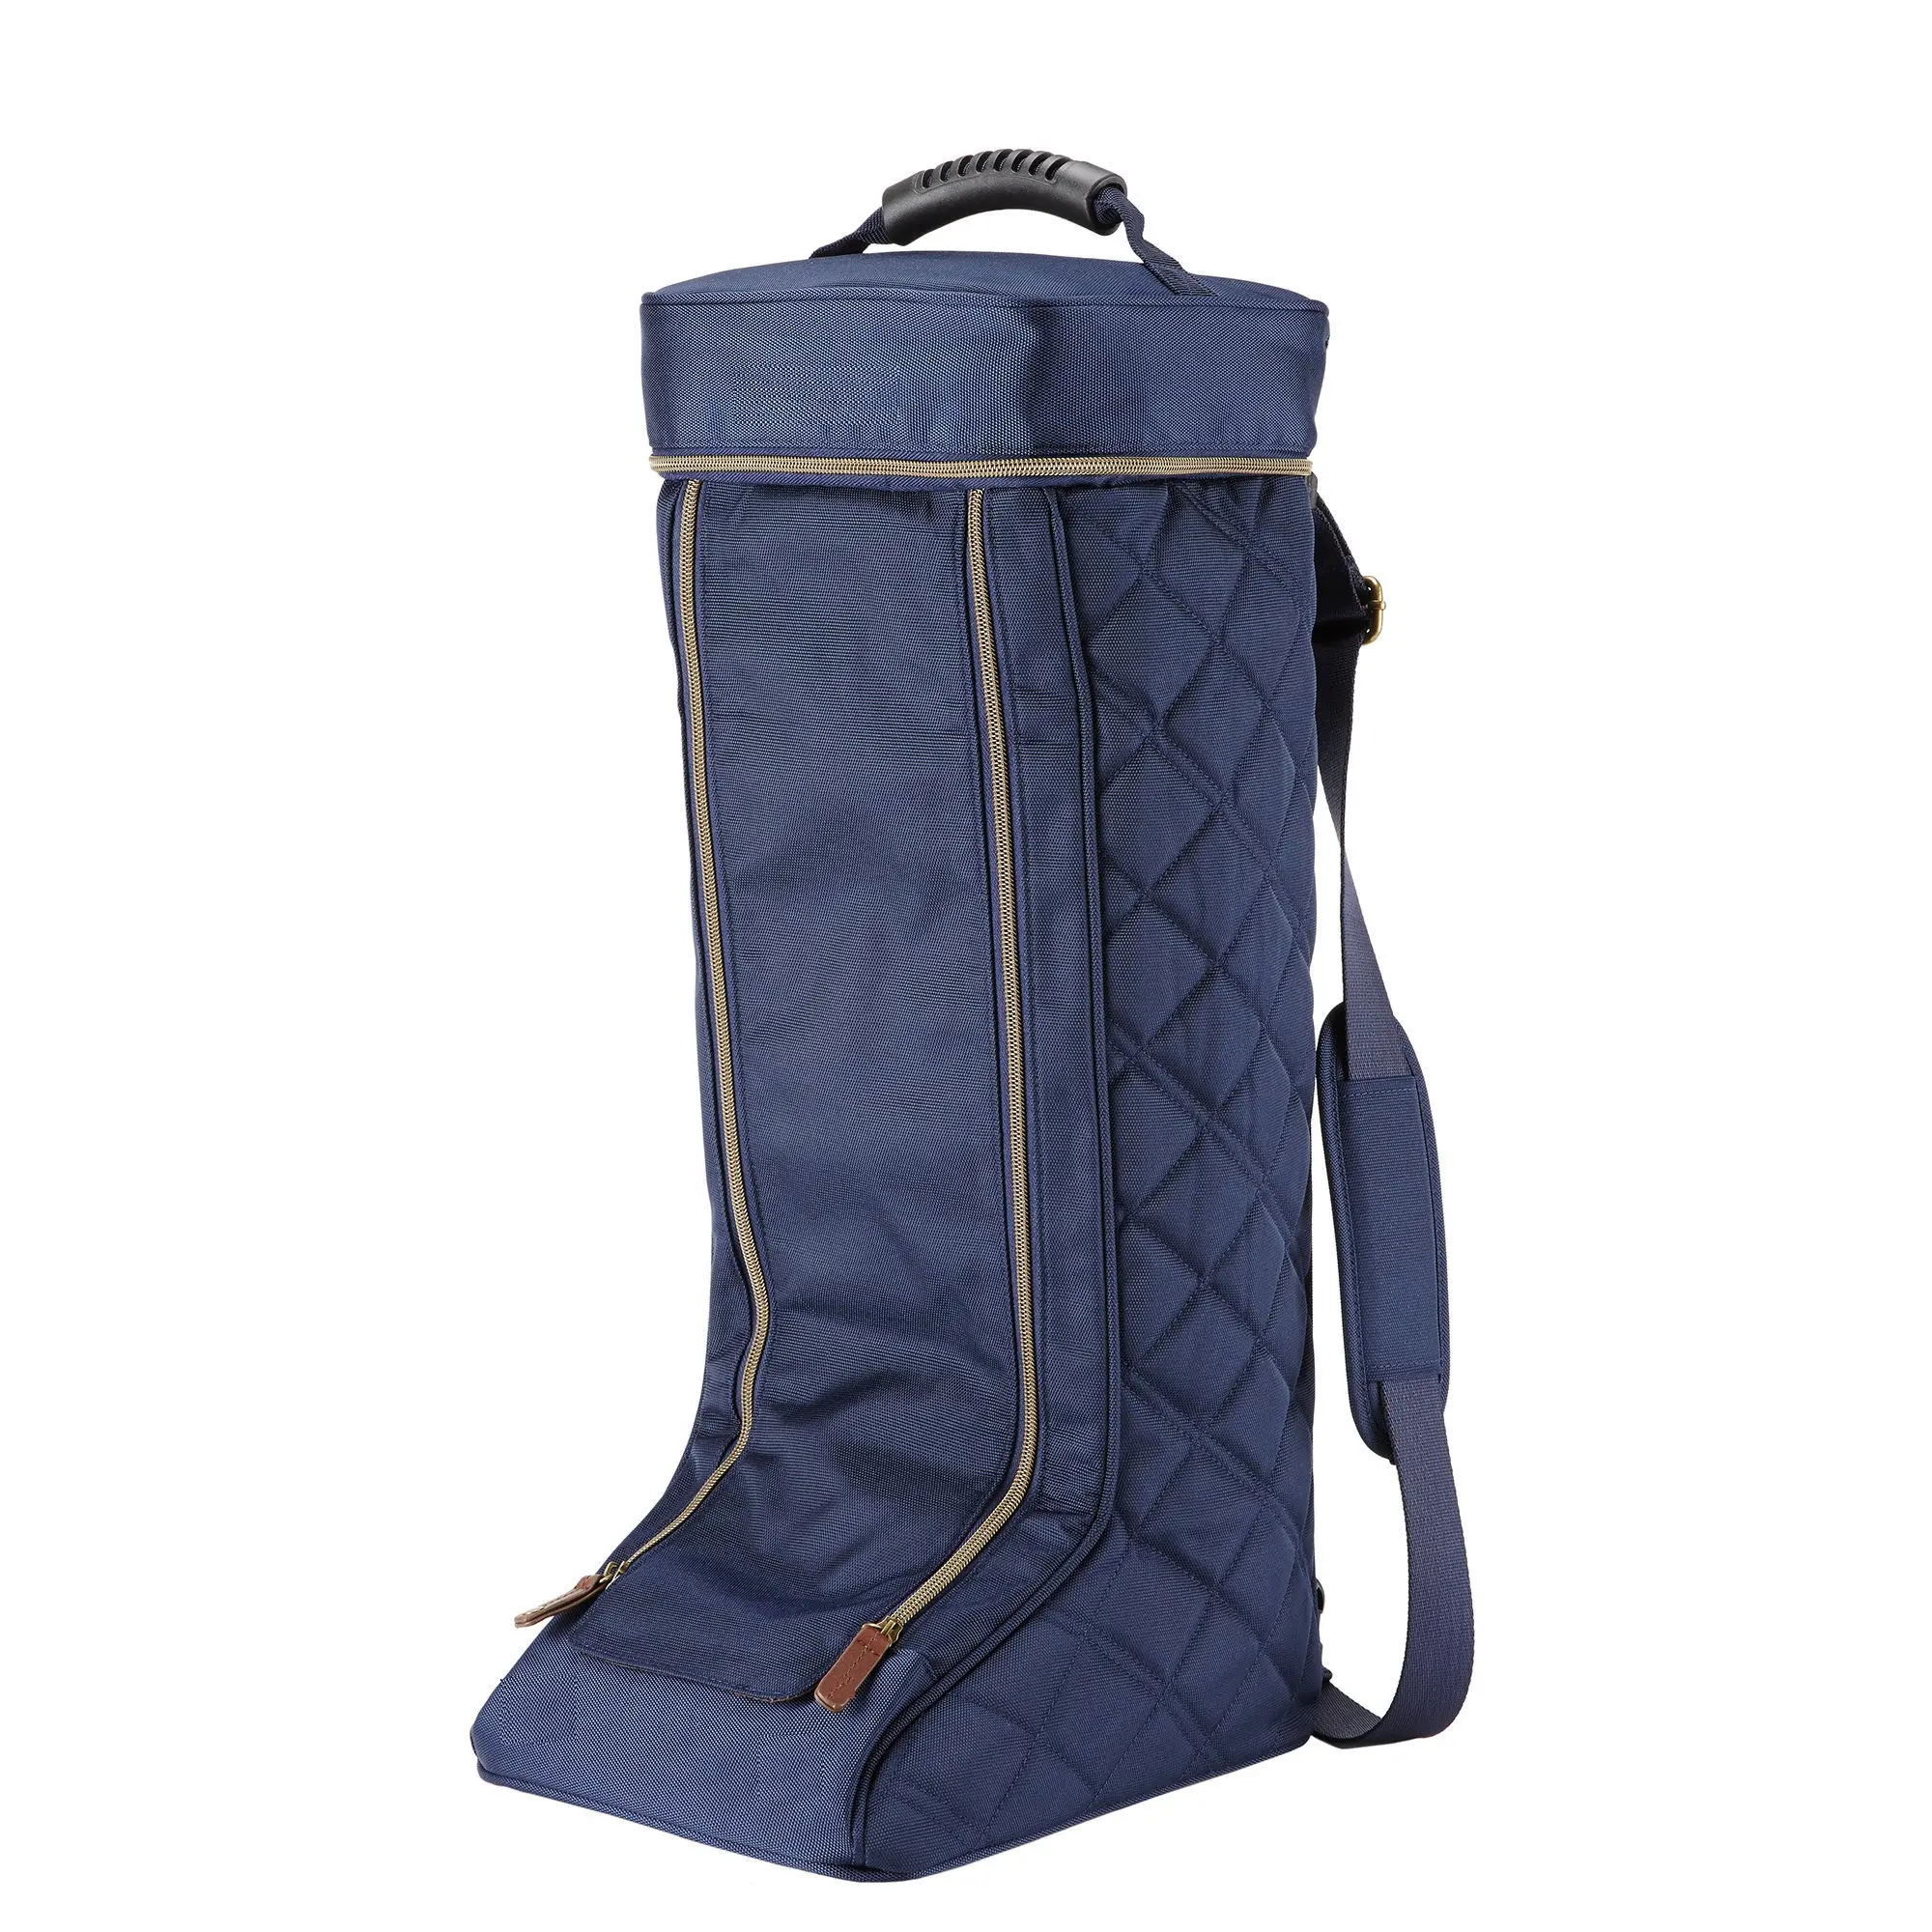 Багажная сумка Shemax для верховой езды, все цвета в наличии, высокое качество